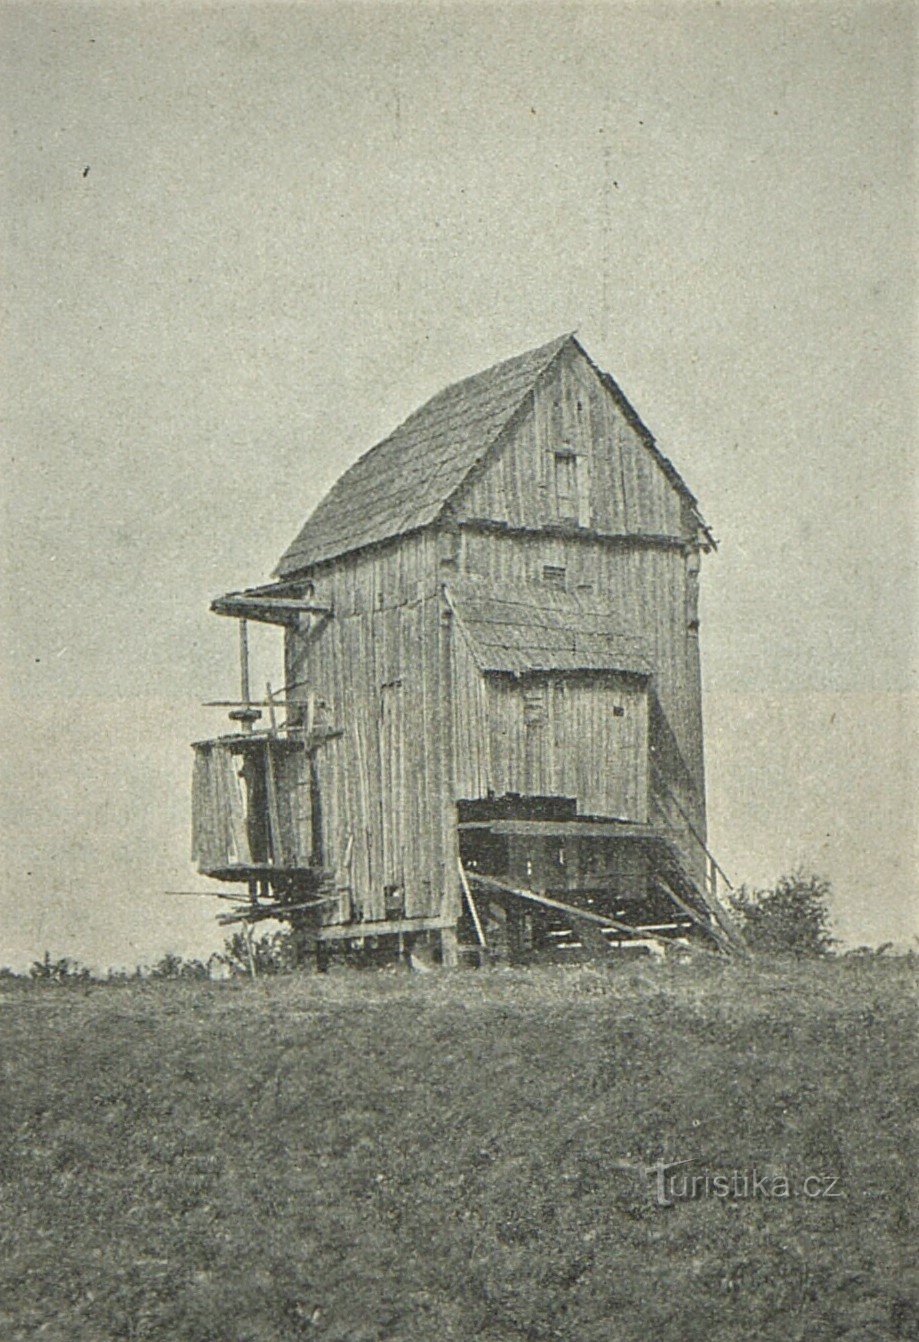 Fotografija vjetrenjače Doblnice iz 1909. godine